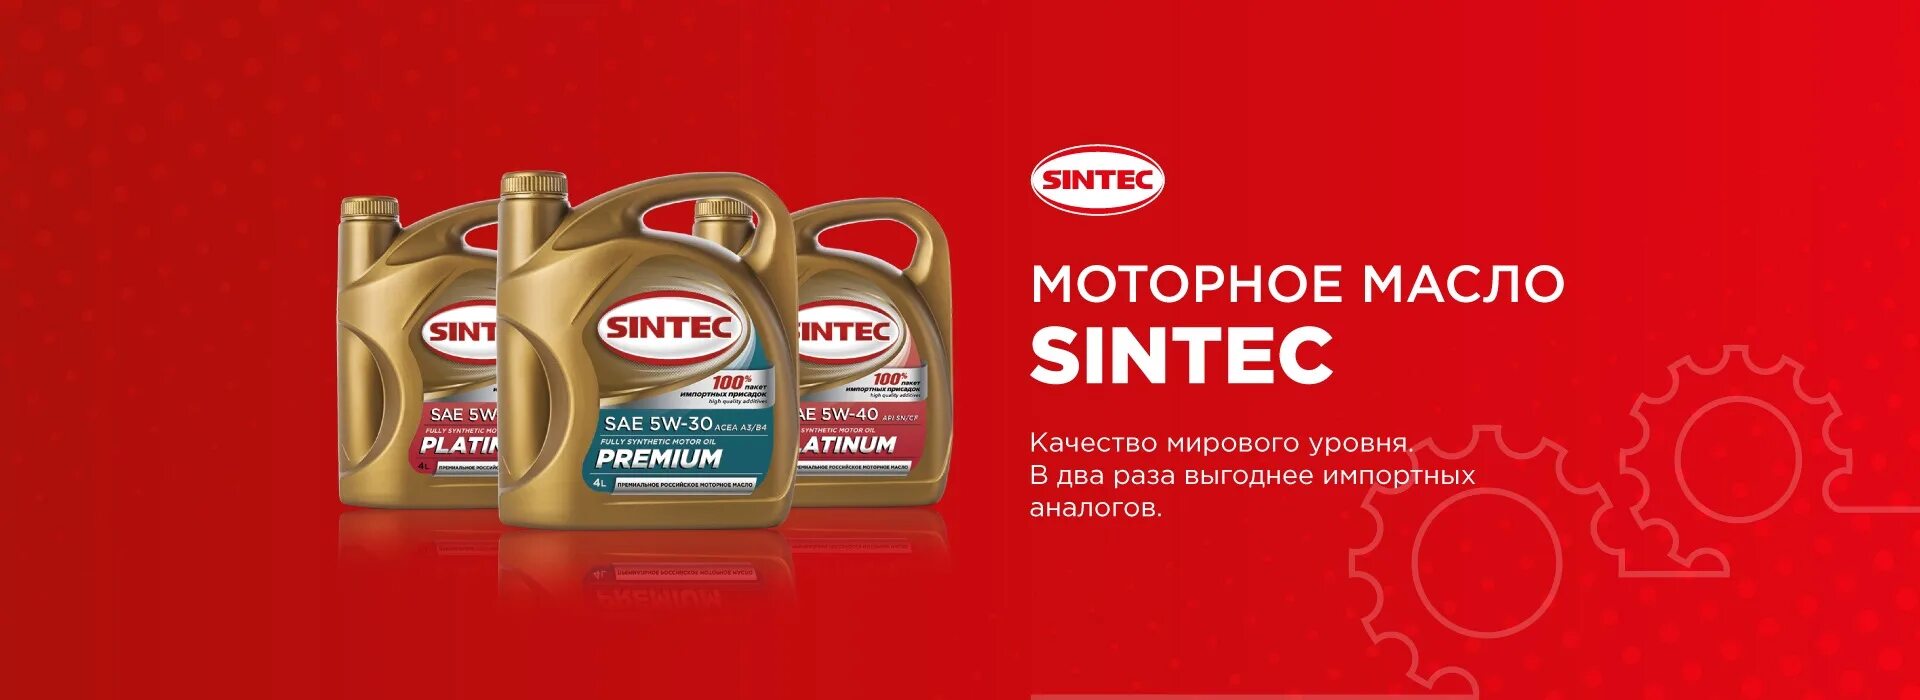 Моторное масло Sintec PNG. Sintec Platinum SAE 5w-30. Моторное масло Синтек реклама. Синтек масло логотип.